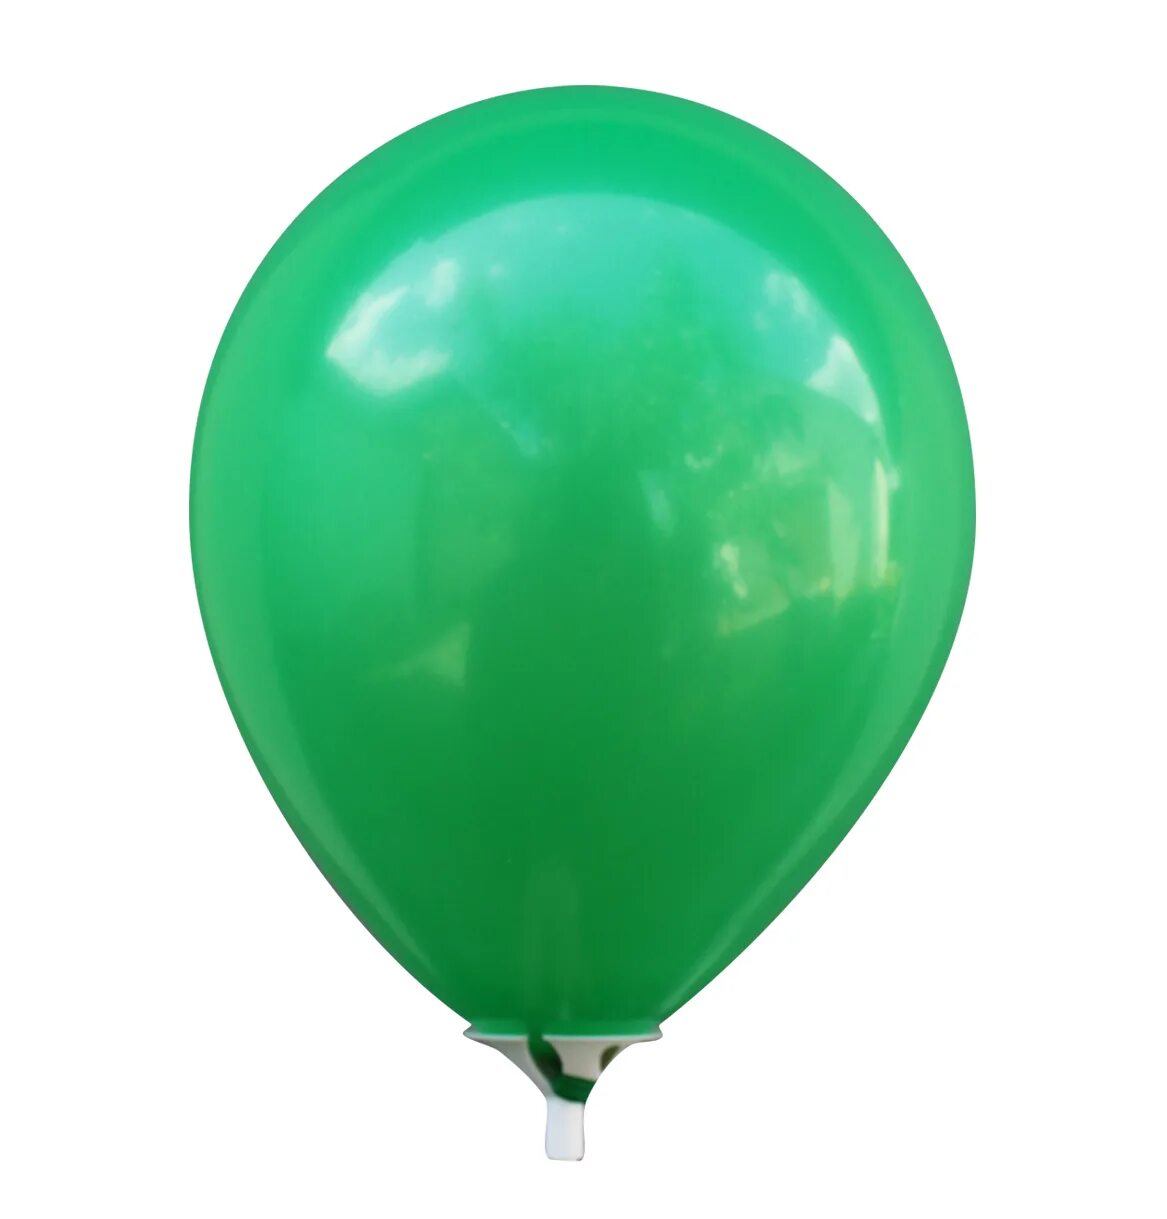 Надуваем зеленые воздушные шарики. Зеленый шарик. Зеленый воздушный шарик. Шарики воздушные салатовые. Латексный шарик зеленый.